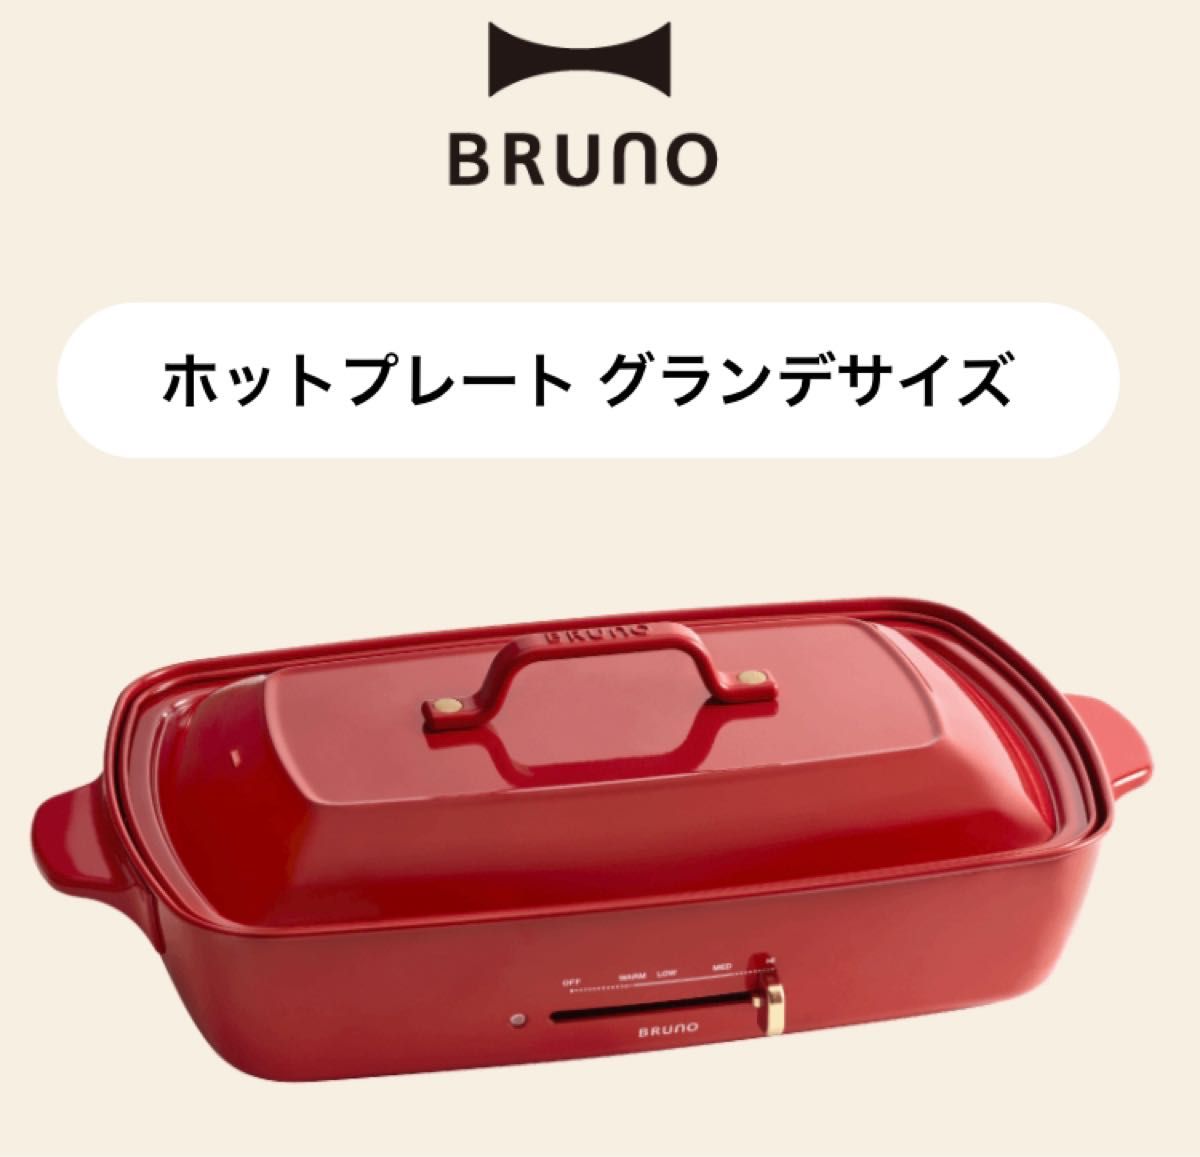 一部数回使用品】BRUNO BOE021-RD ブルーノ レッド ホットプレート 赤